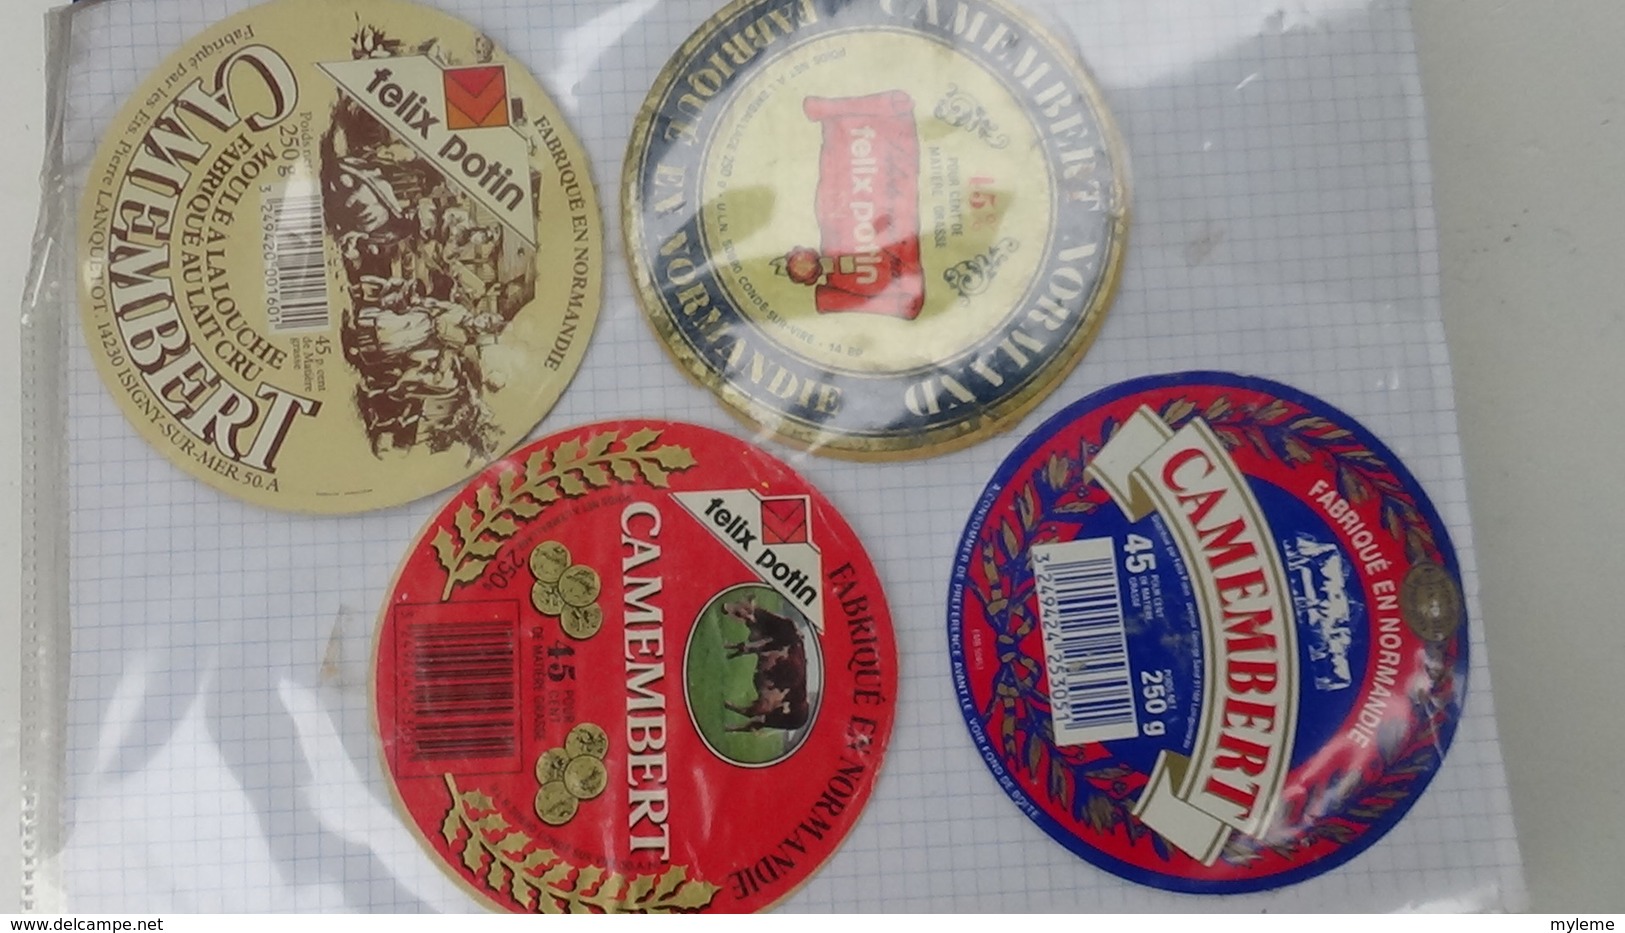 Grosse collection de couvercles et étiquettes (259 dans ce classeur) de fromages Français. 10/10 Voir commentaires !!!